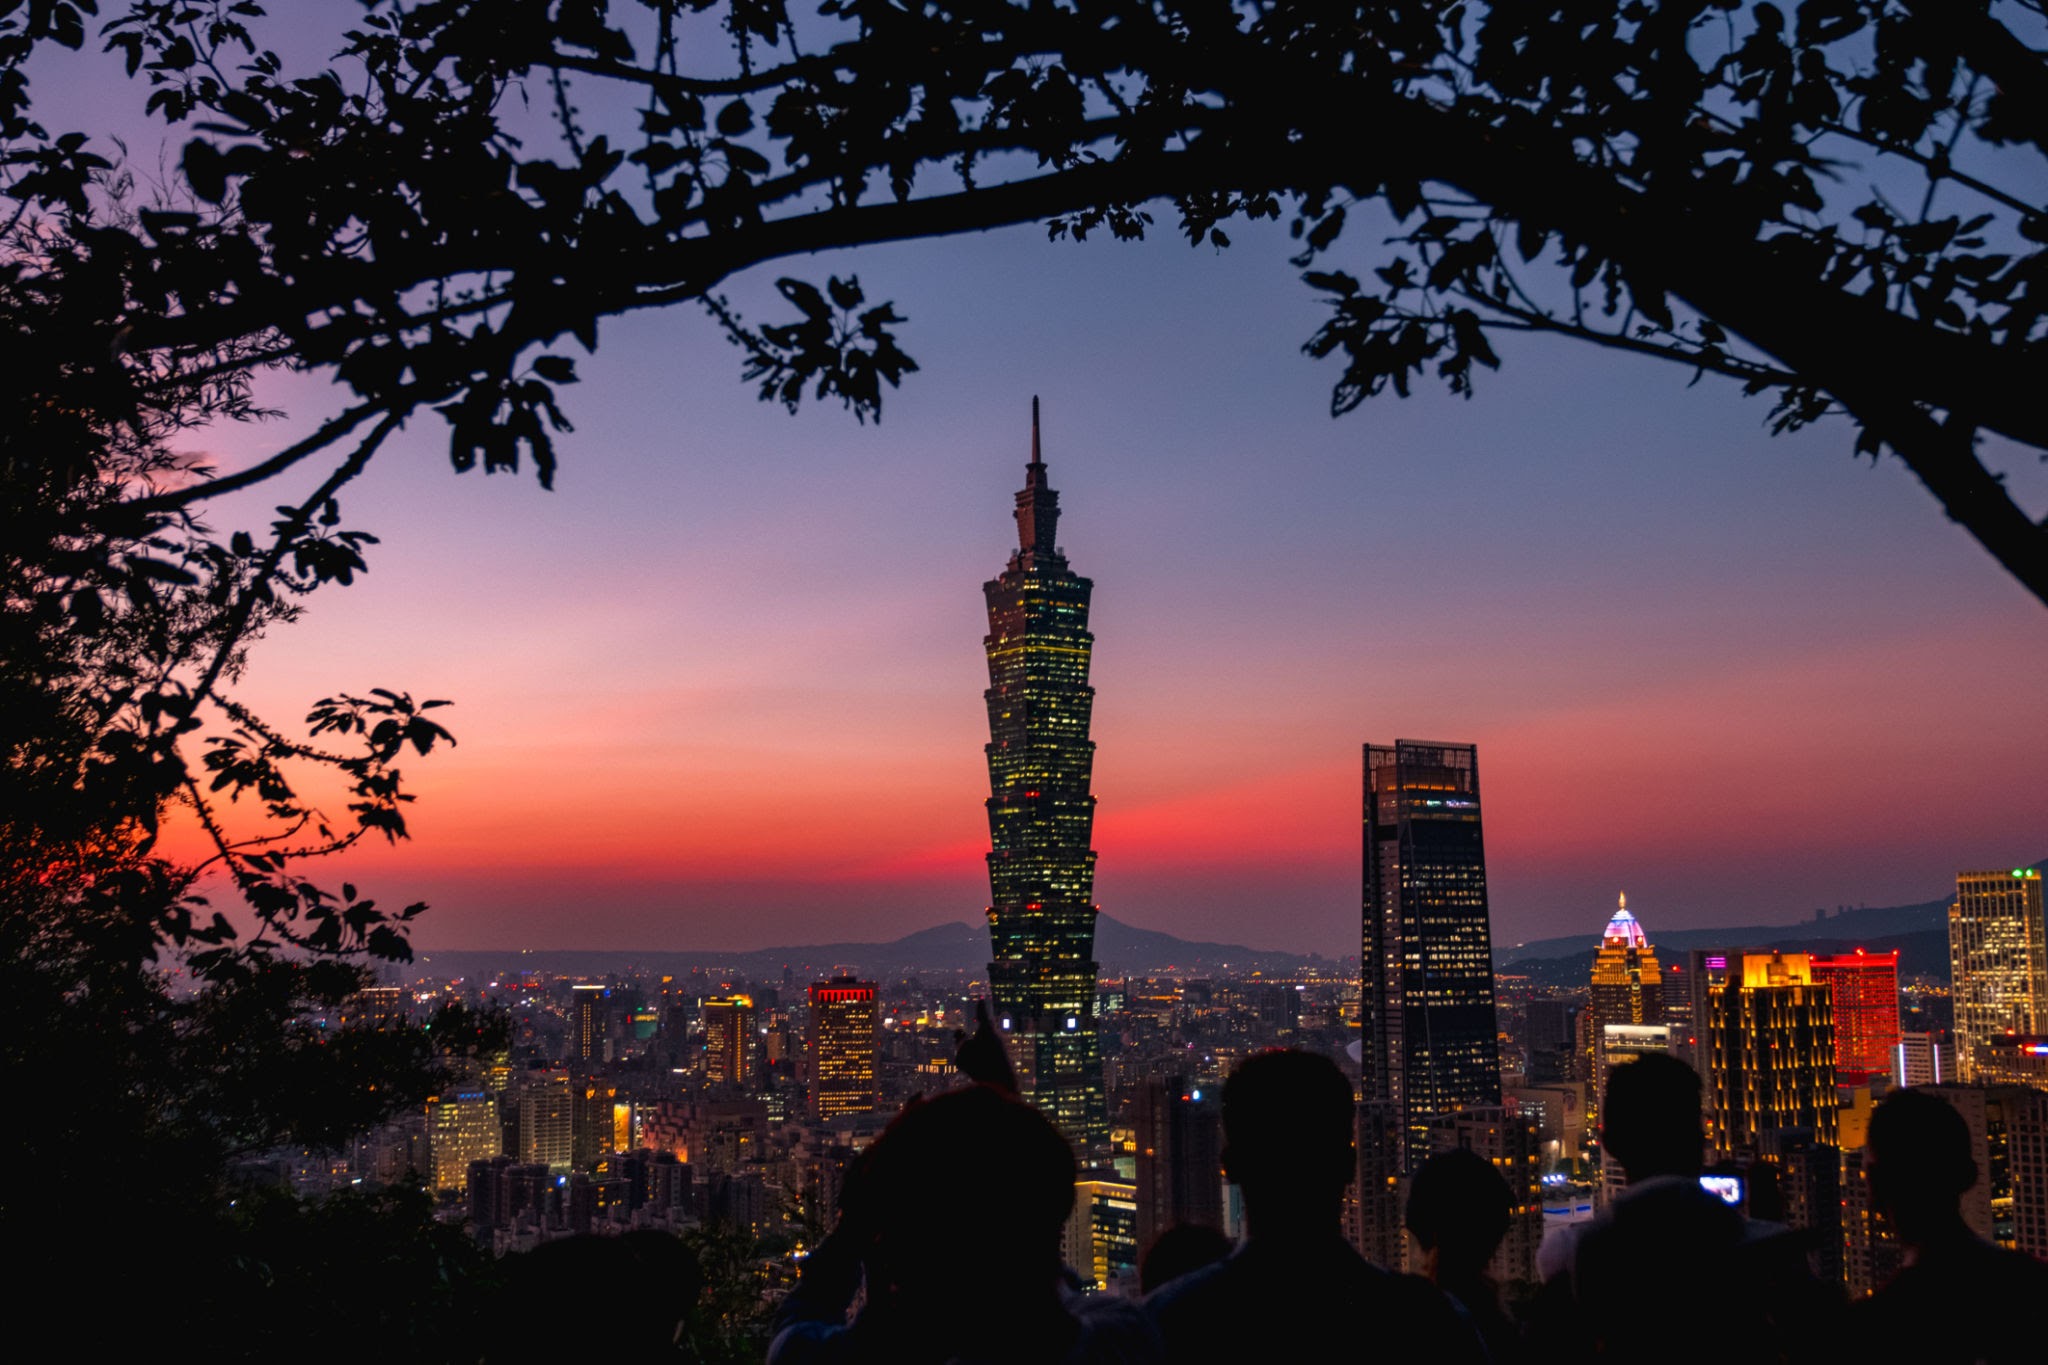 Taipei 101 Observatory